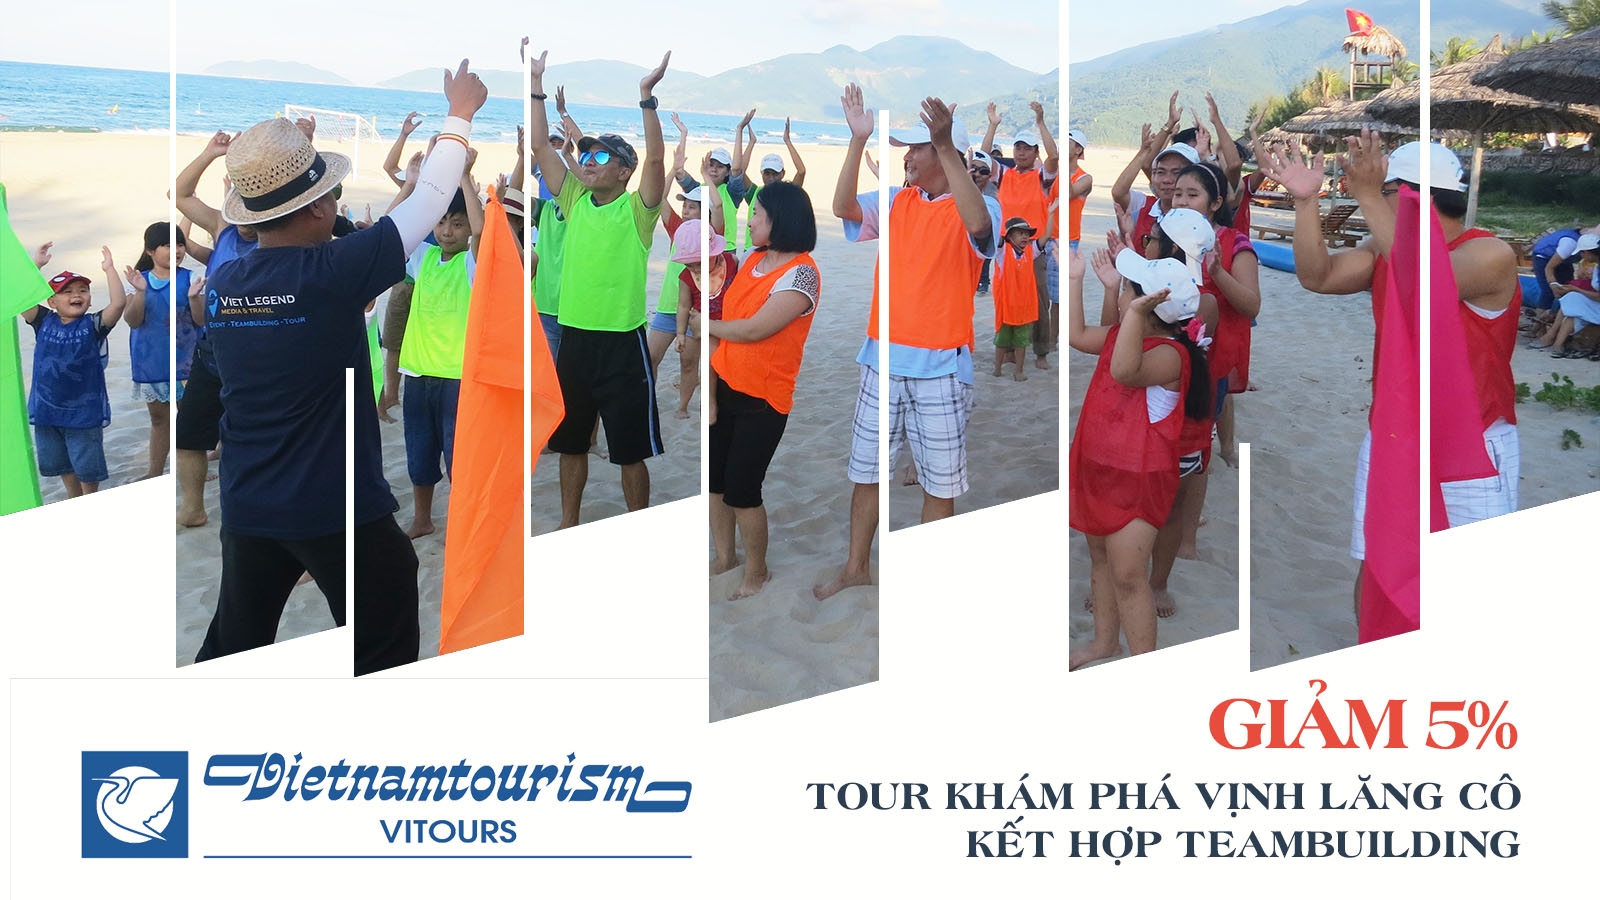 Vitours | Giảm 5% Tour tham quan Vịnh Lăng Cô kết hợp team building 1